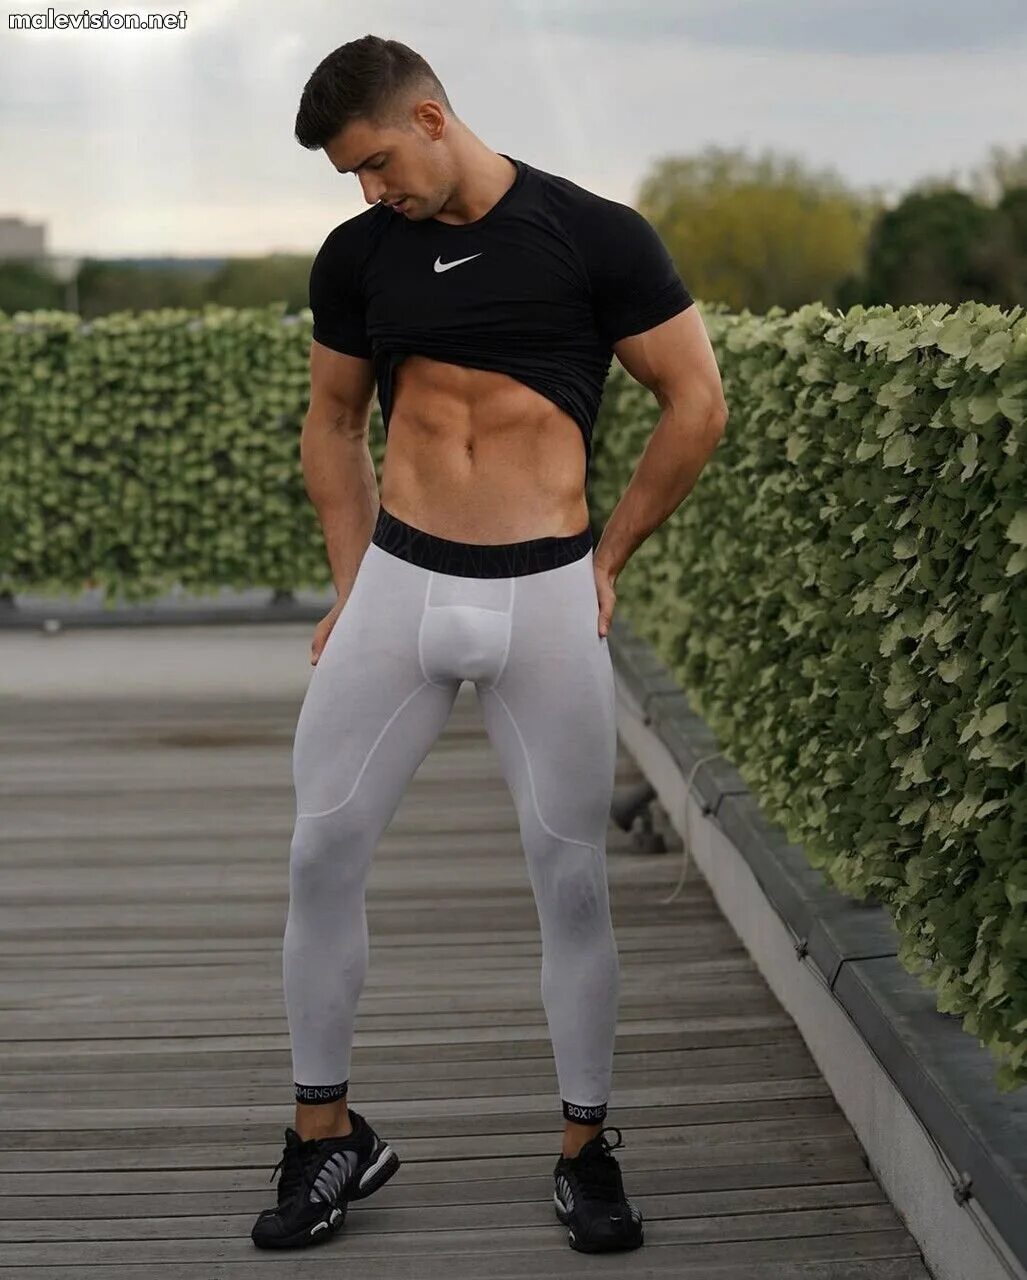 Никколо Нери. Никколо Нери модель. Обтягивающие штаны для мужчин. Спортивные штаны в обтяжку. Парни в серых спортивках